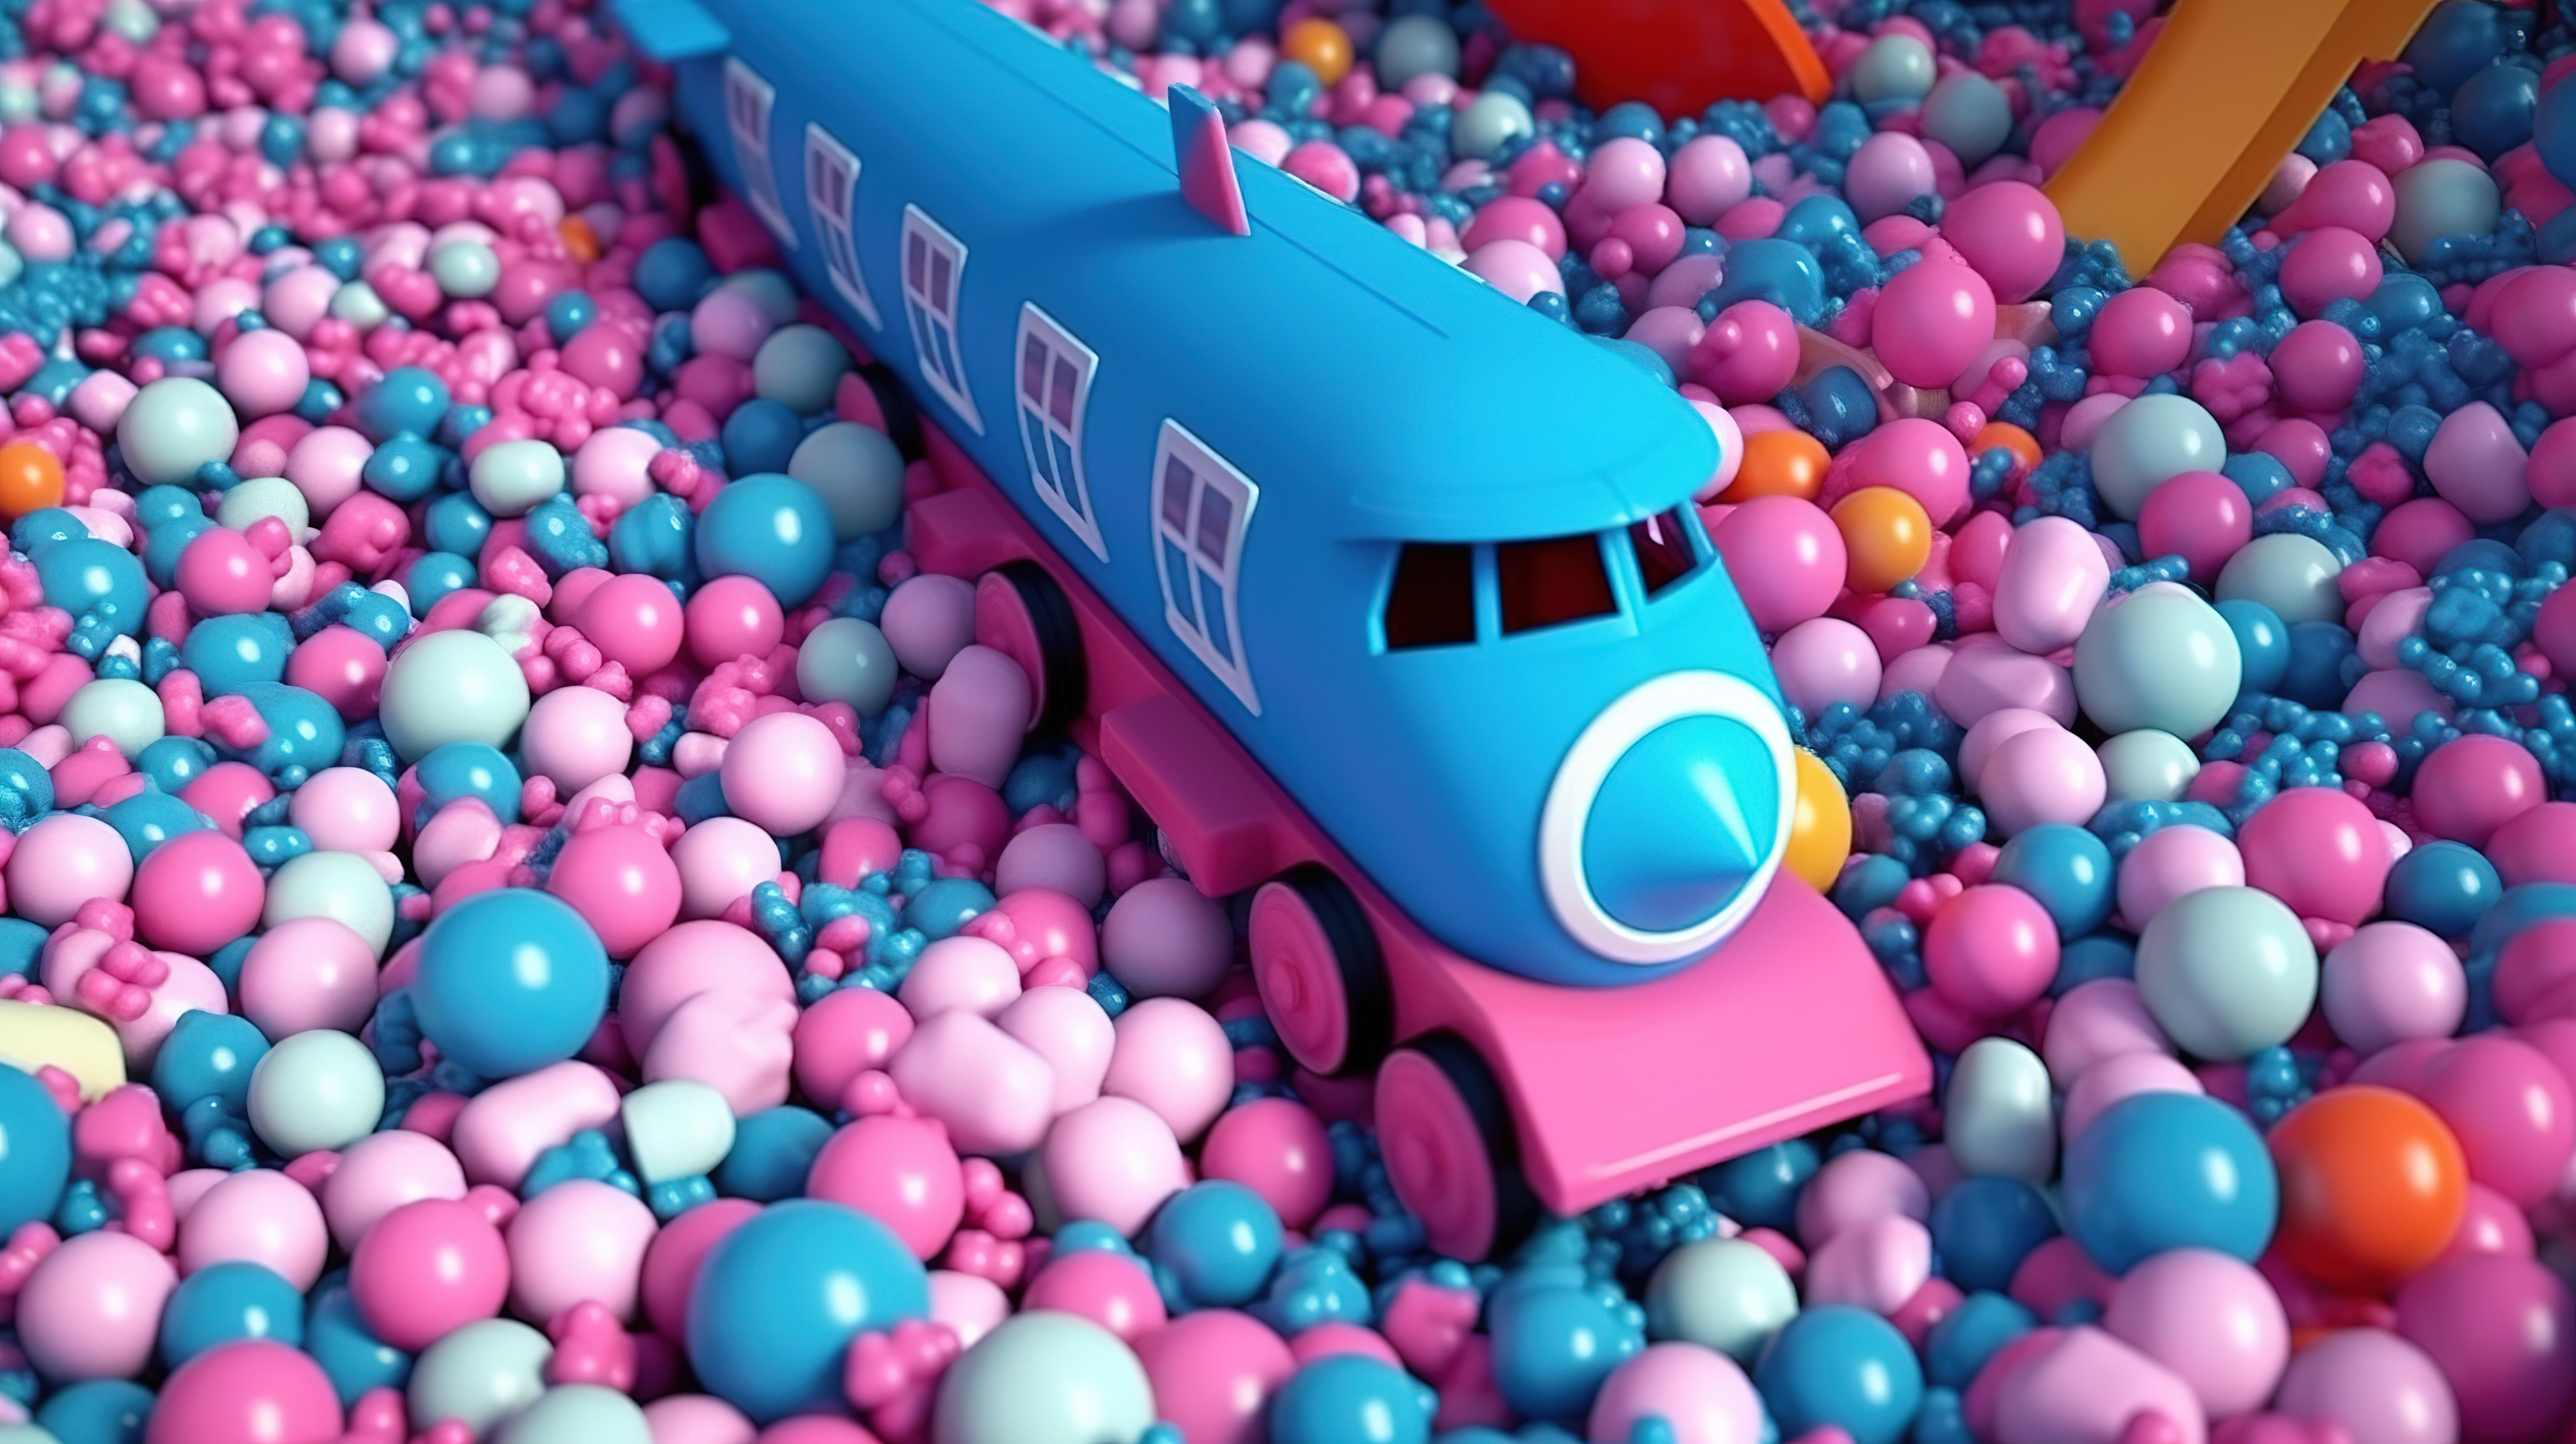 充满活力的球围绕着粉色玩具火车和飞机，呈现出引人注目的蓝色 3D 渲染效果图片